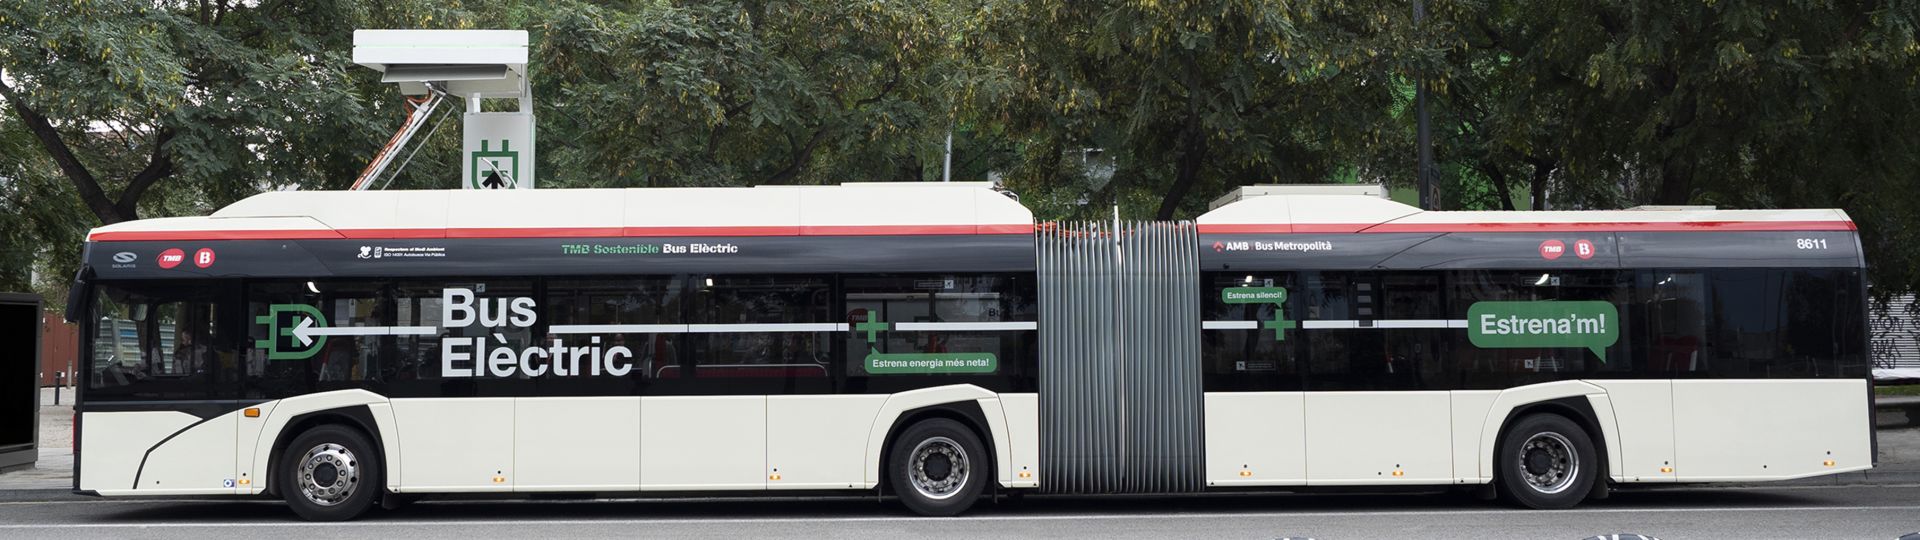 10 Millionen elektrische Kilometer auf dem Tacho von Solaris-Batteriebussen